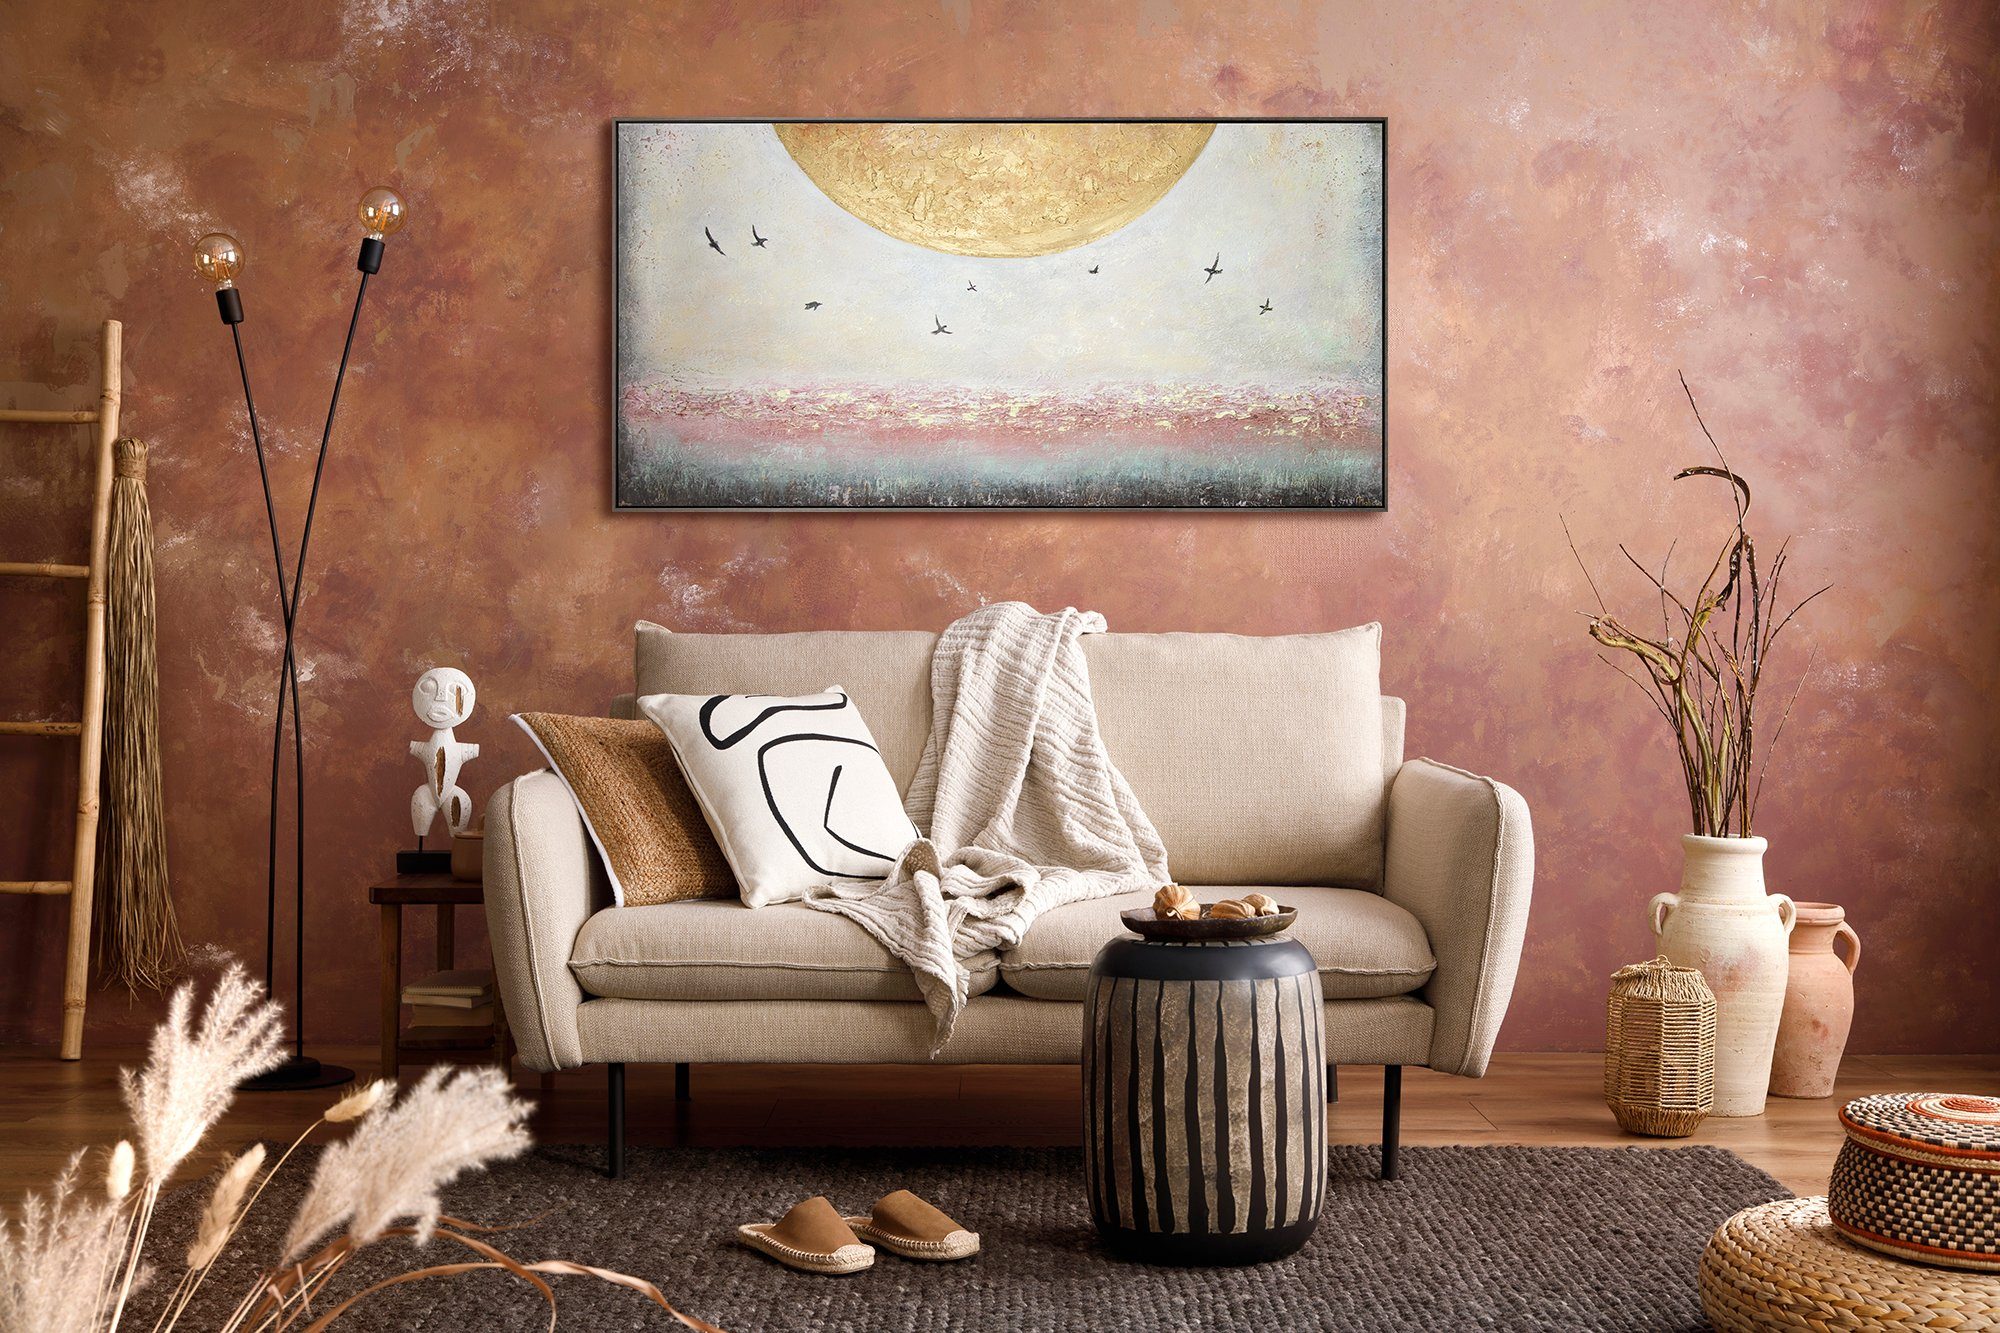 YS-Art Gemälde Sonnenenergie, Mit in Landschaft, Gold Süden Vögel Sonne Rahmen Bild Leinwand Handgemalt Grau